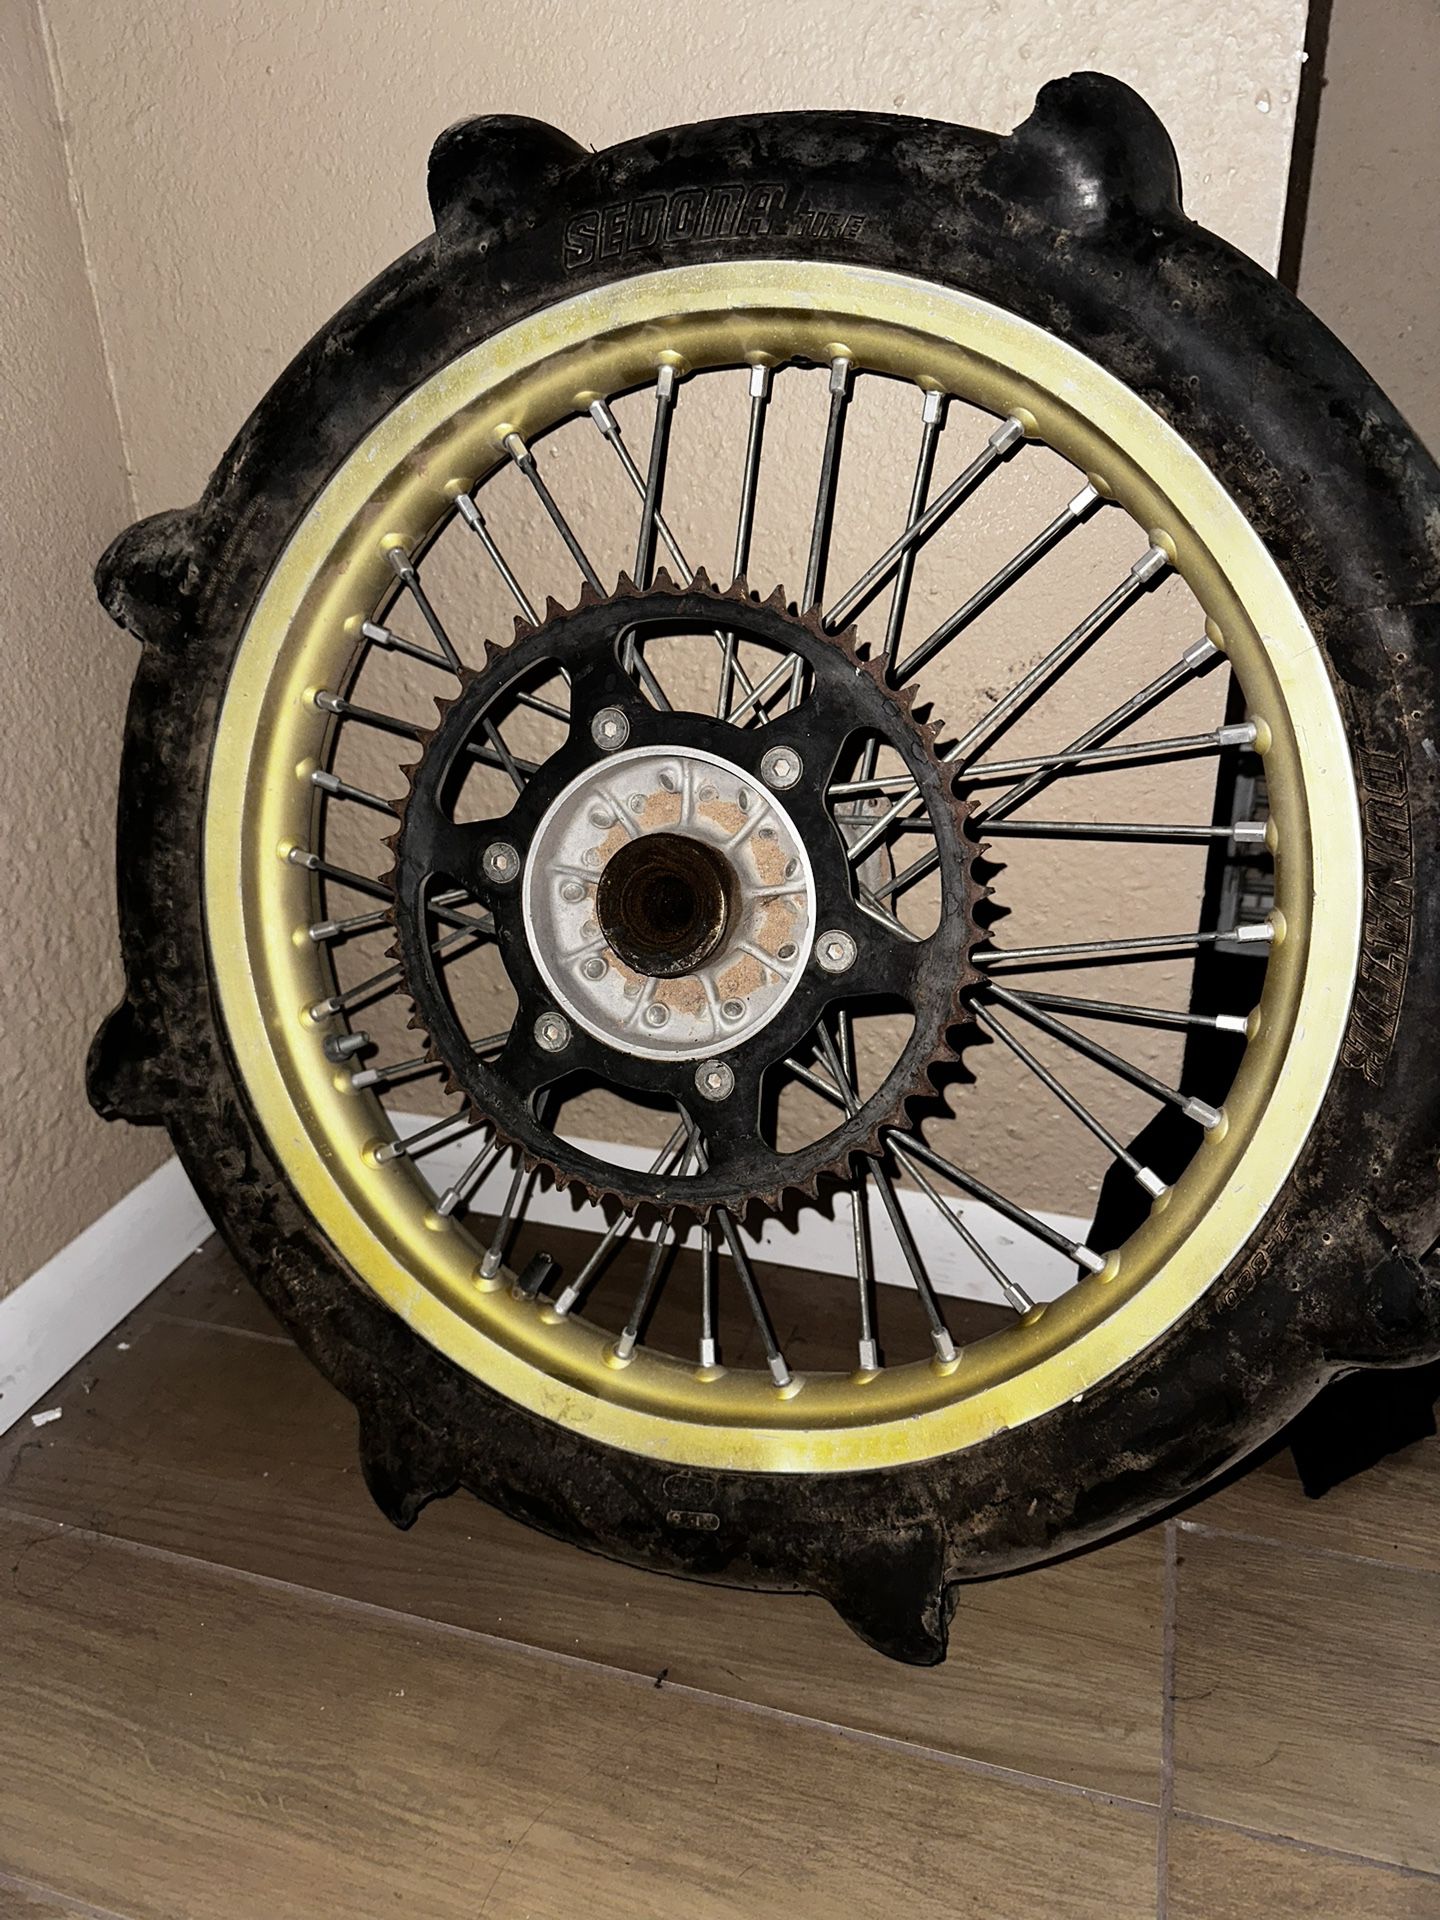 2 Stroke Dirt bike Wheels 